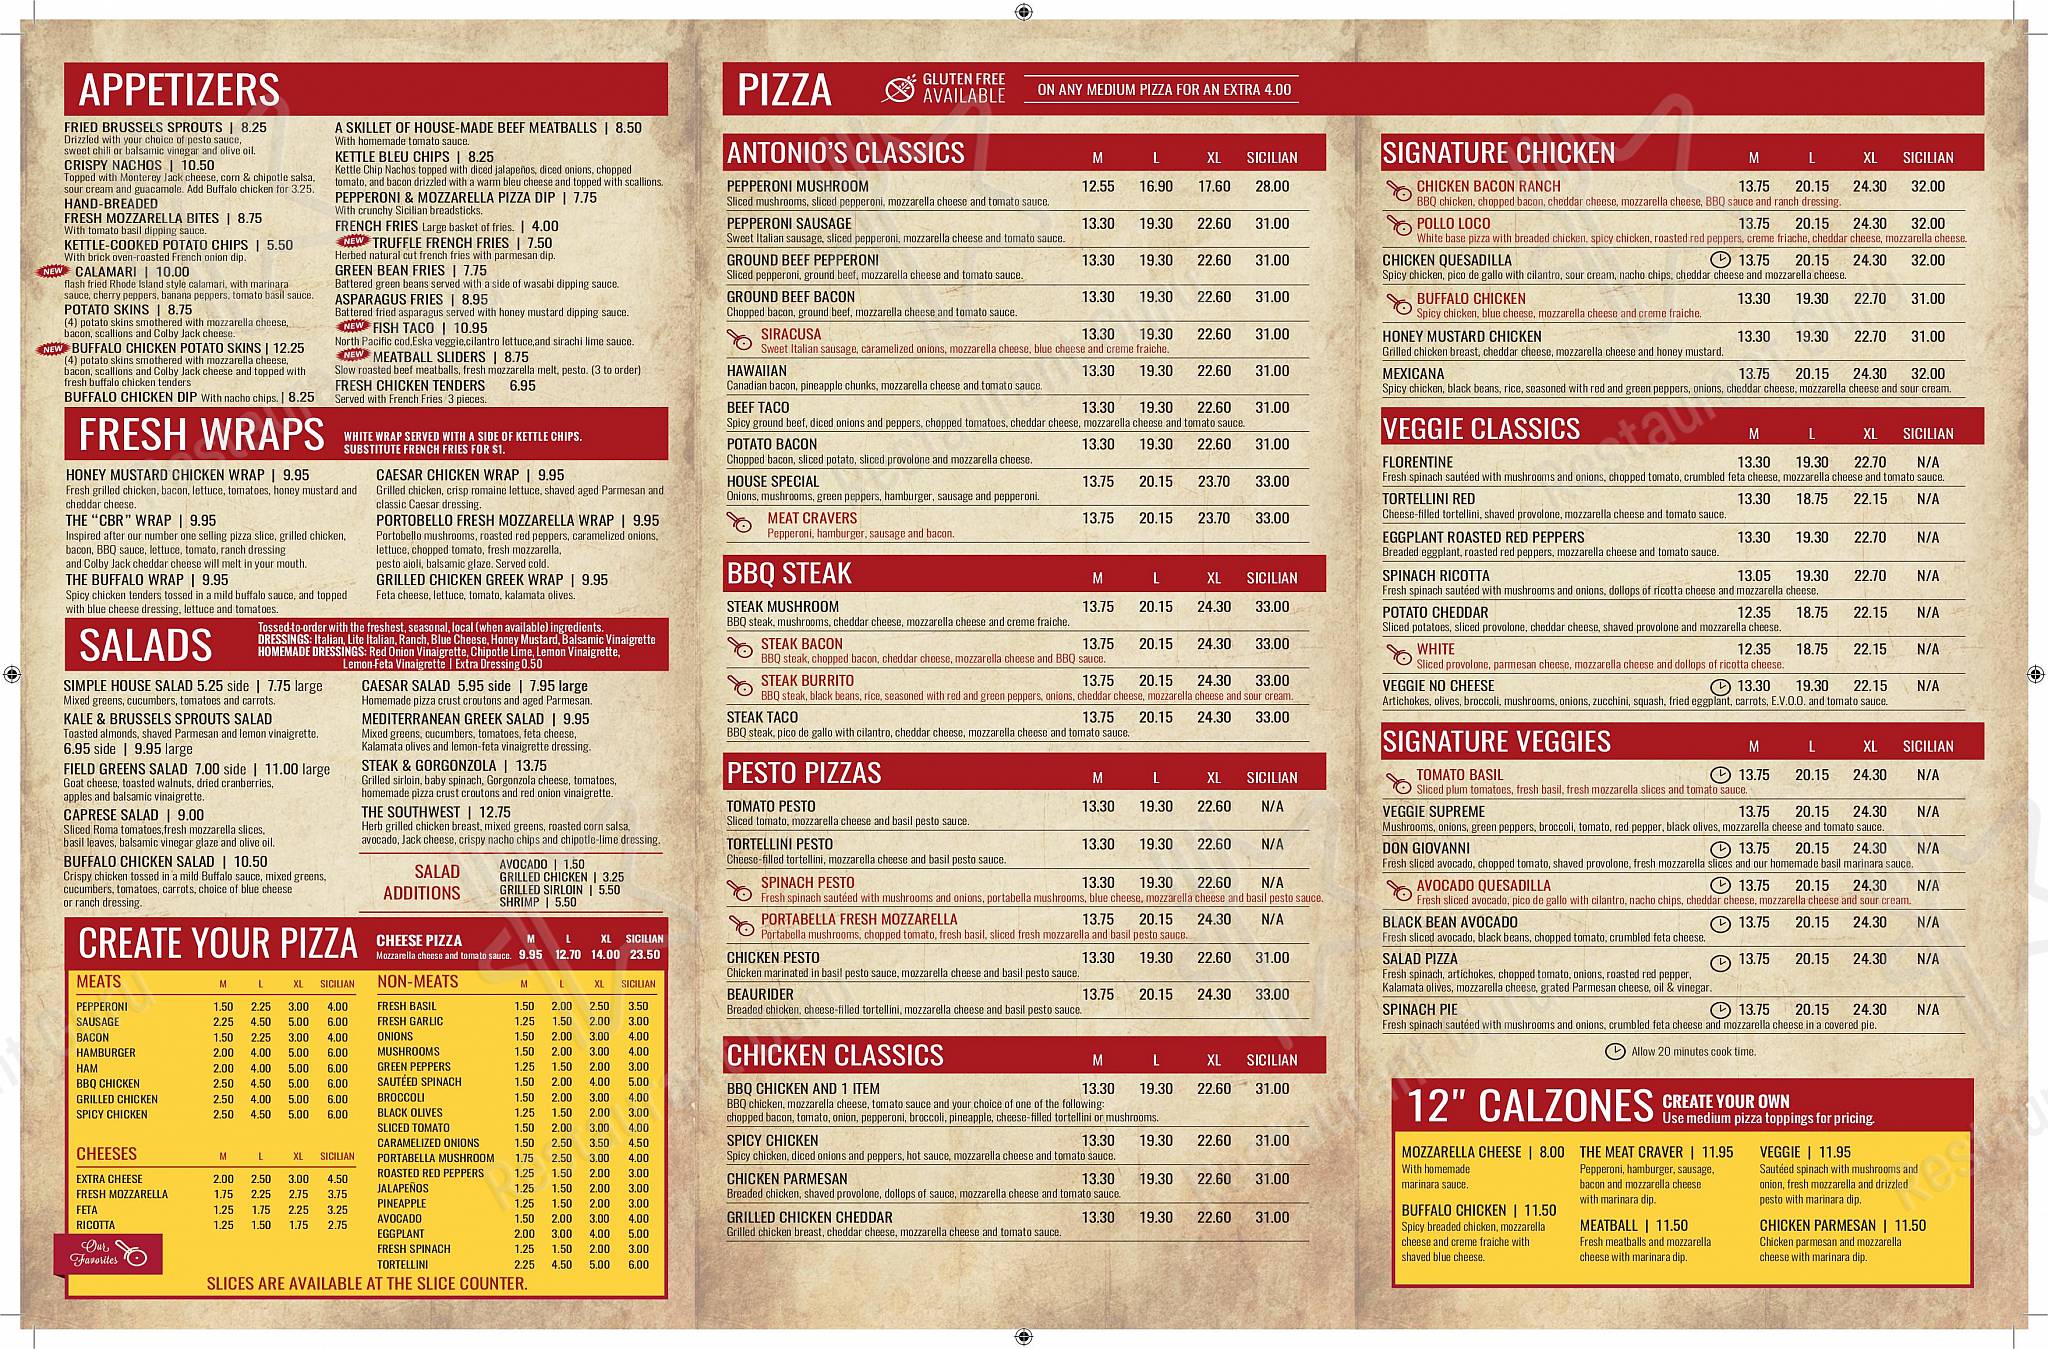 Antonio's pizza and pasta menu